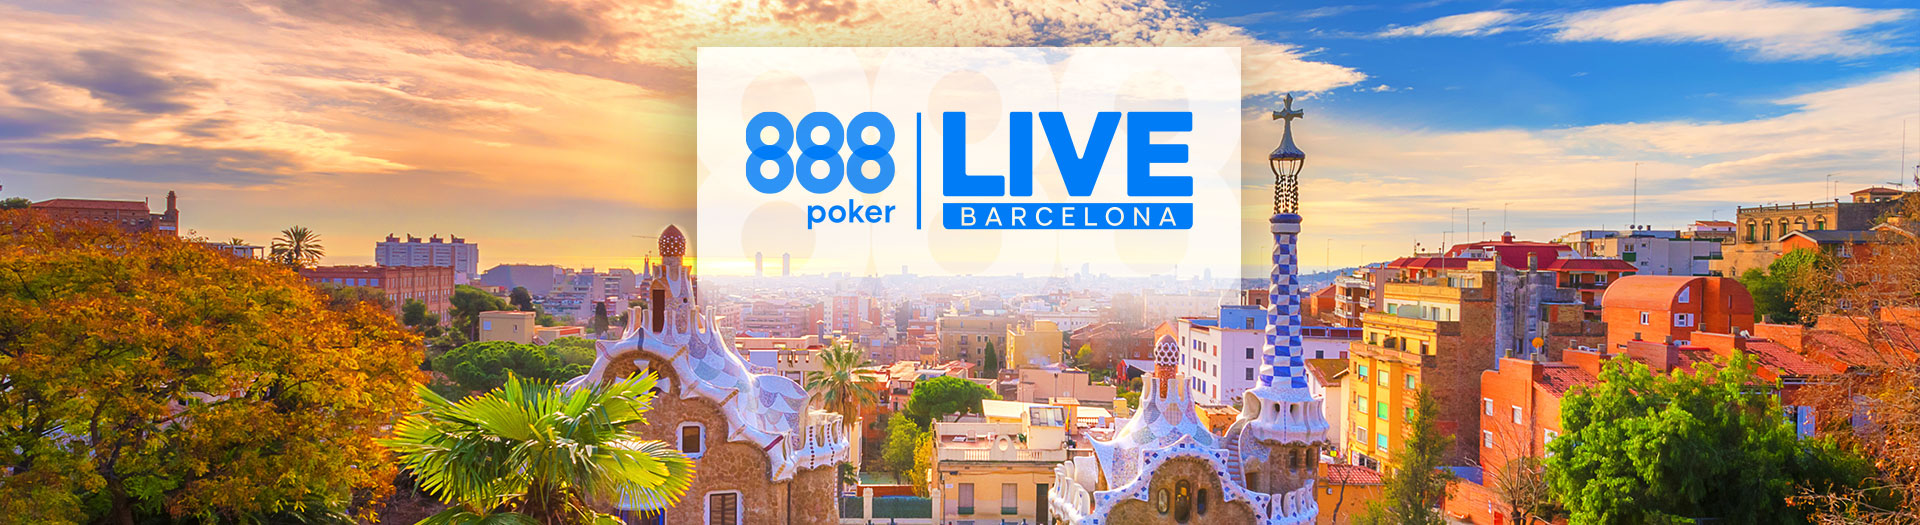 Live-Barcelona-LP-image-1676288901943_tcm1987-580278